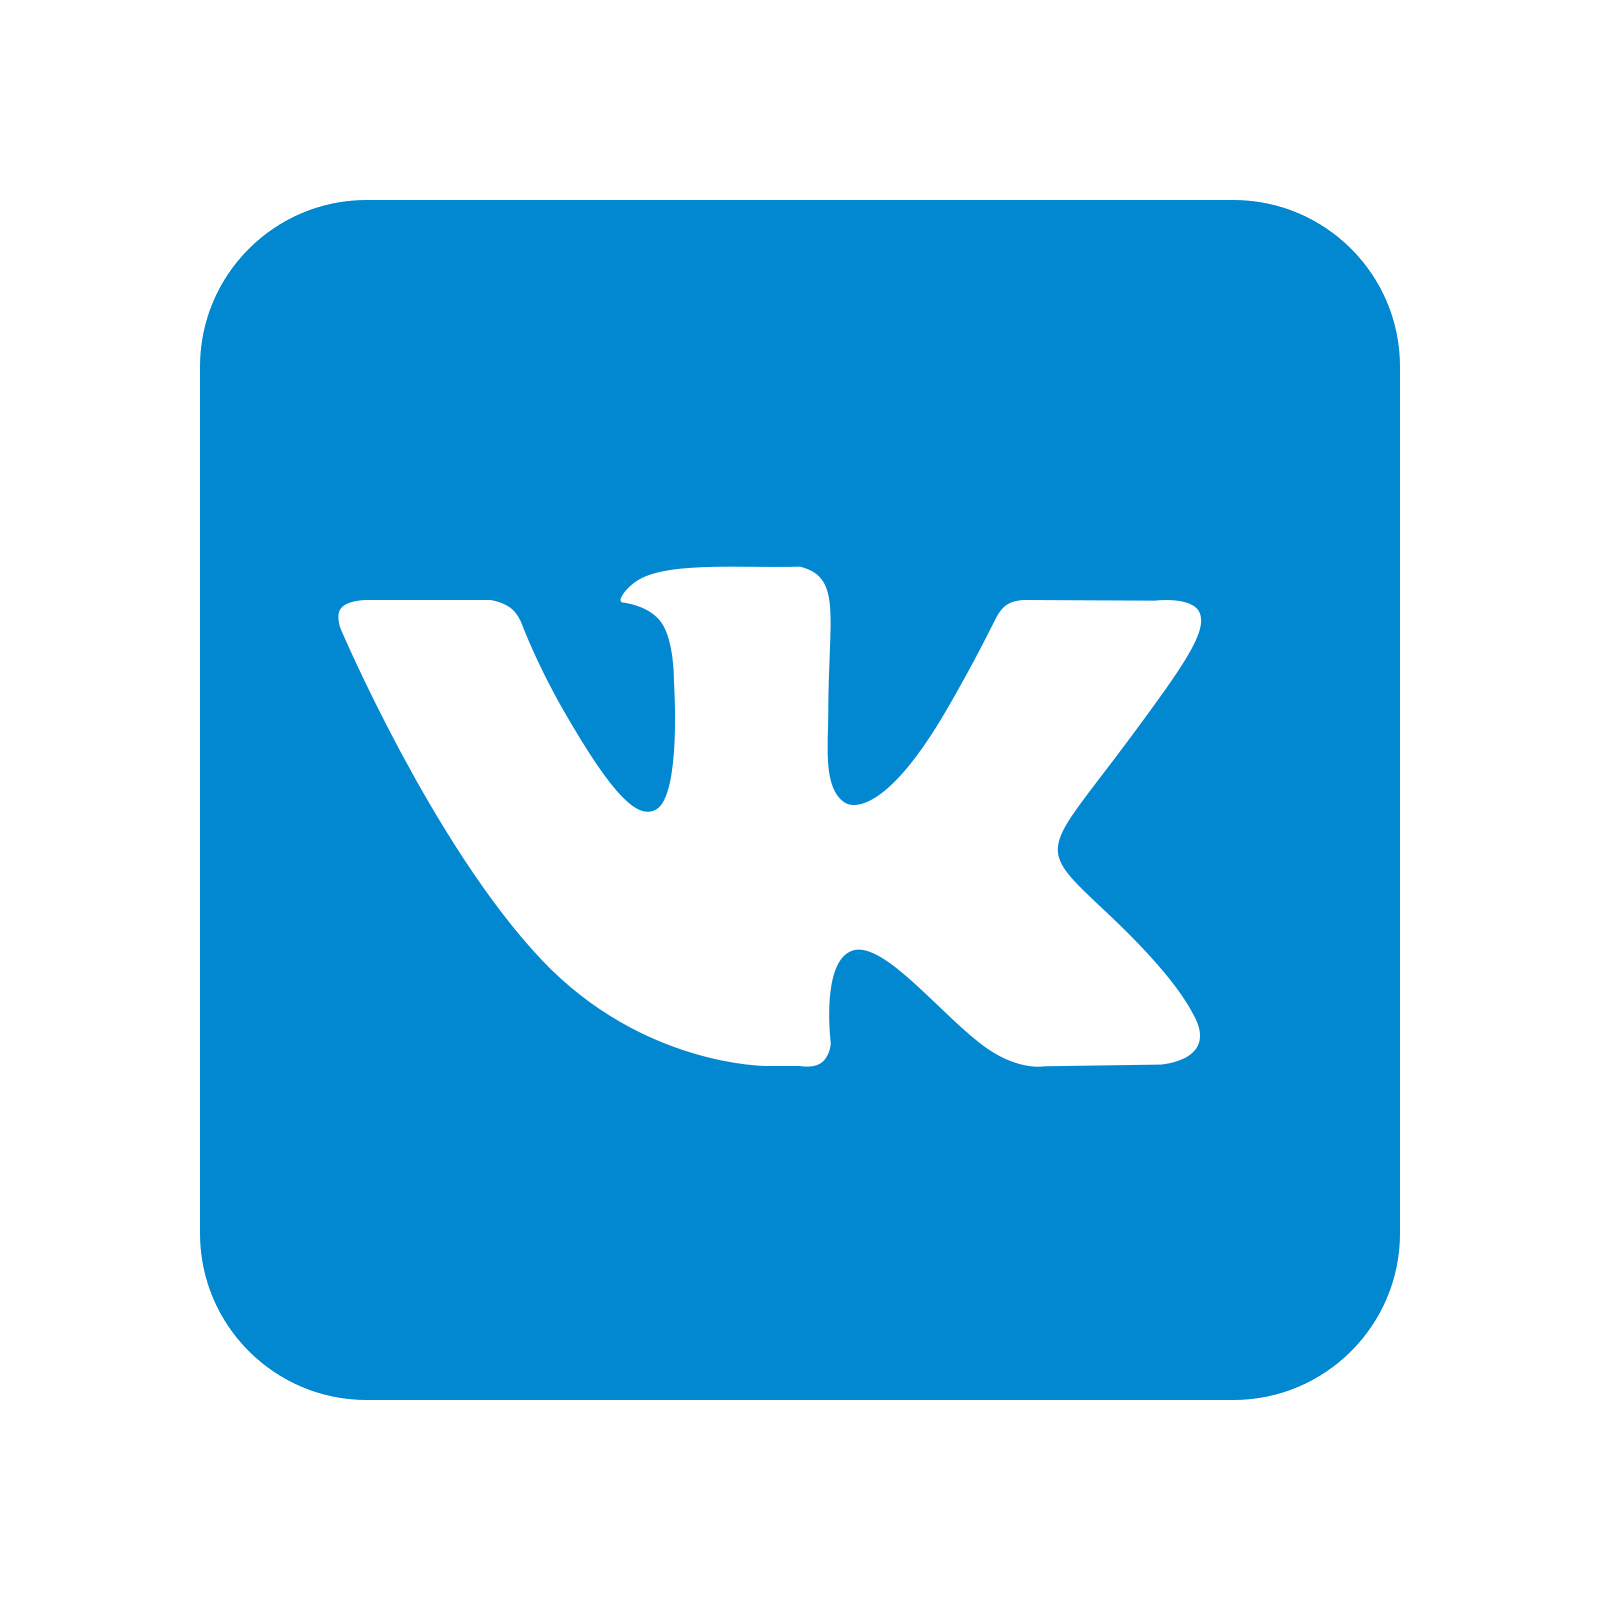 Vkontakte Logo Transparent Background